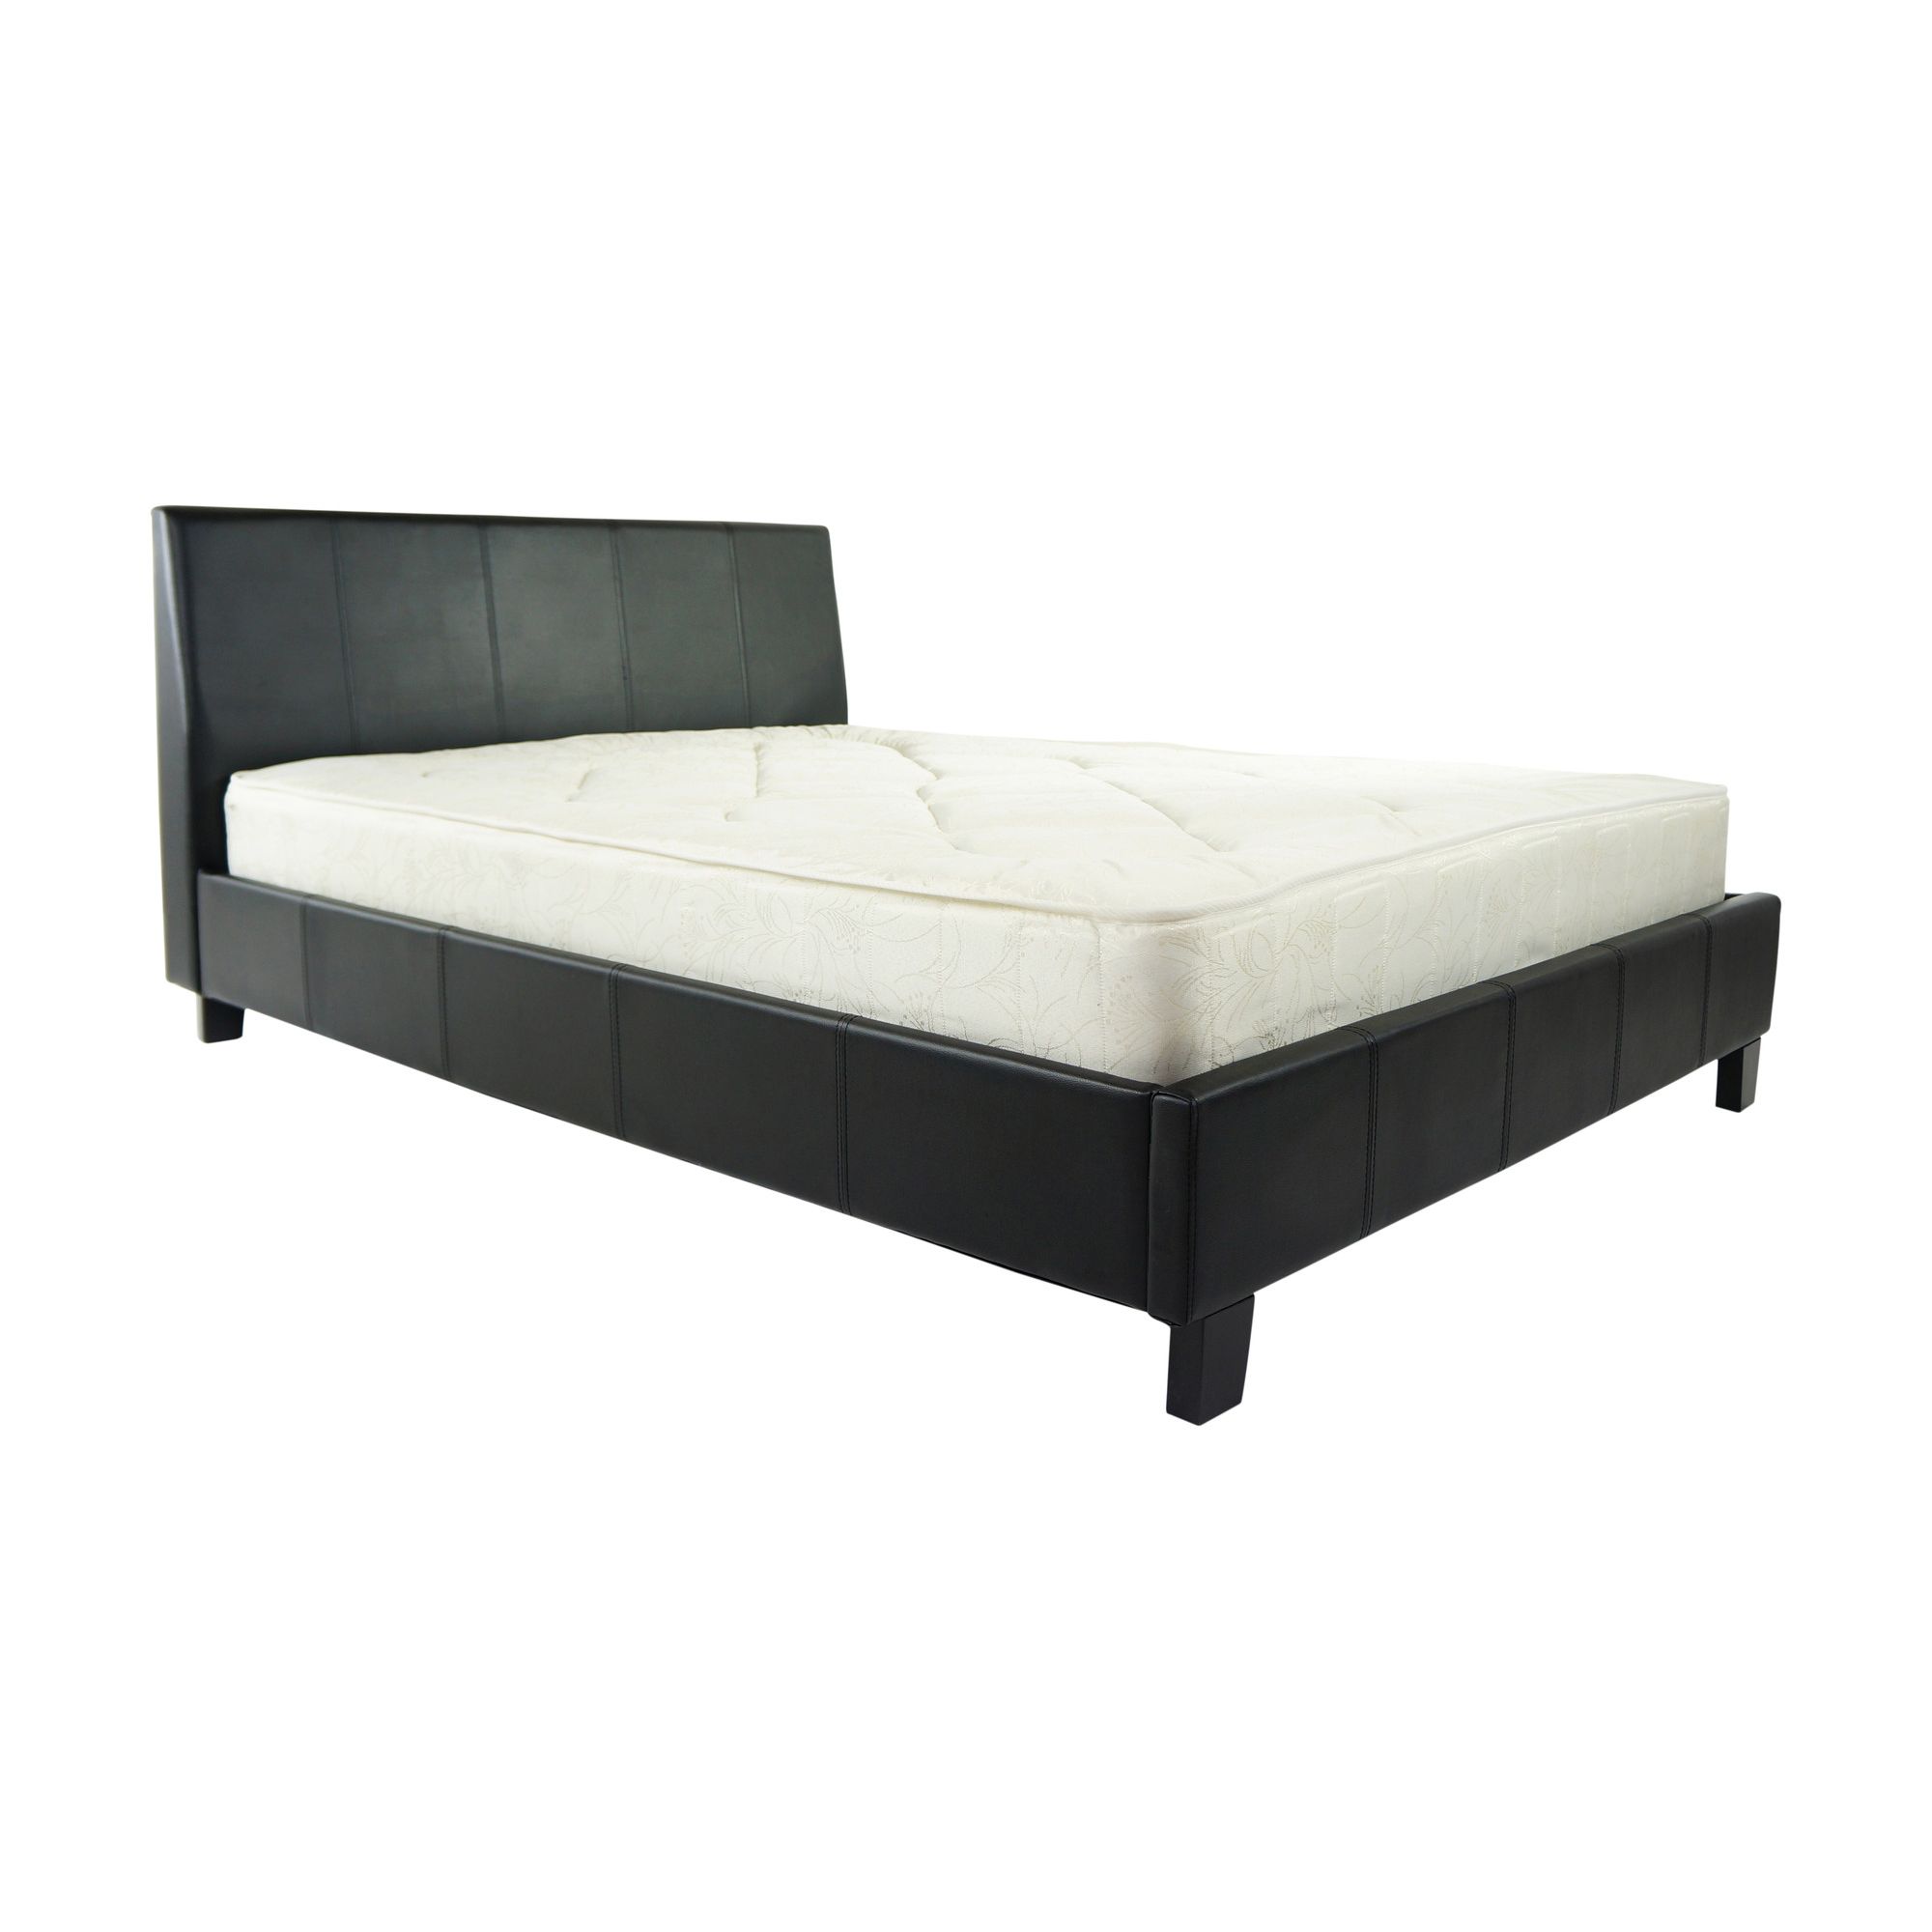 Alpha furniture Denver Real Leather Bed - Black - King at Tesco Direct